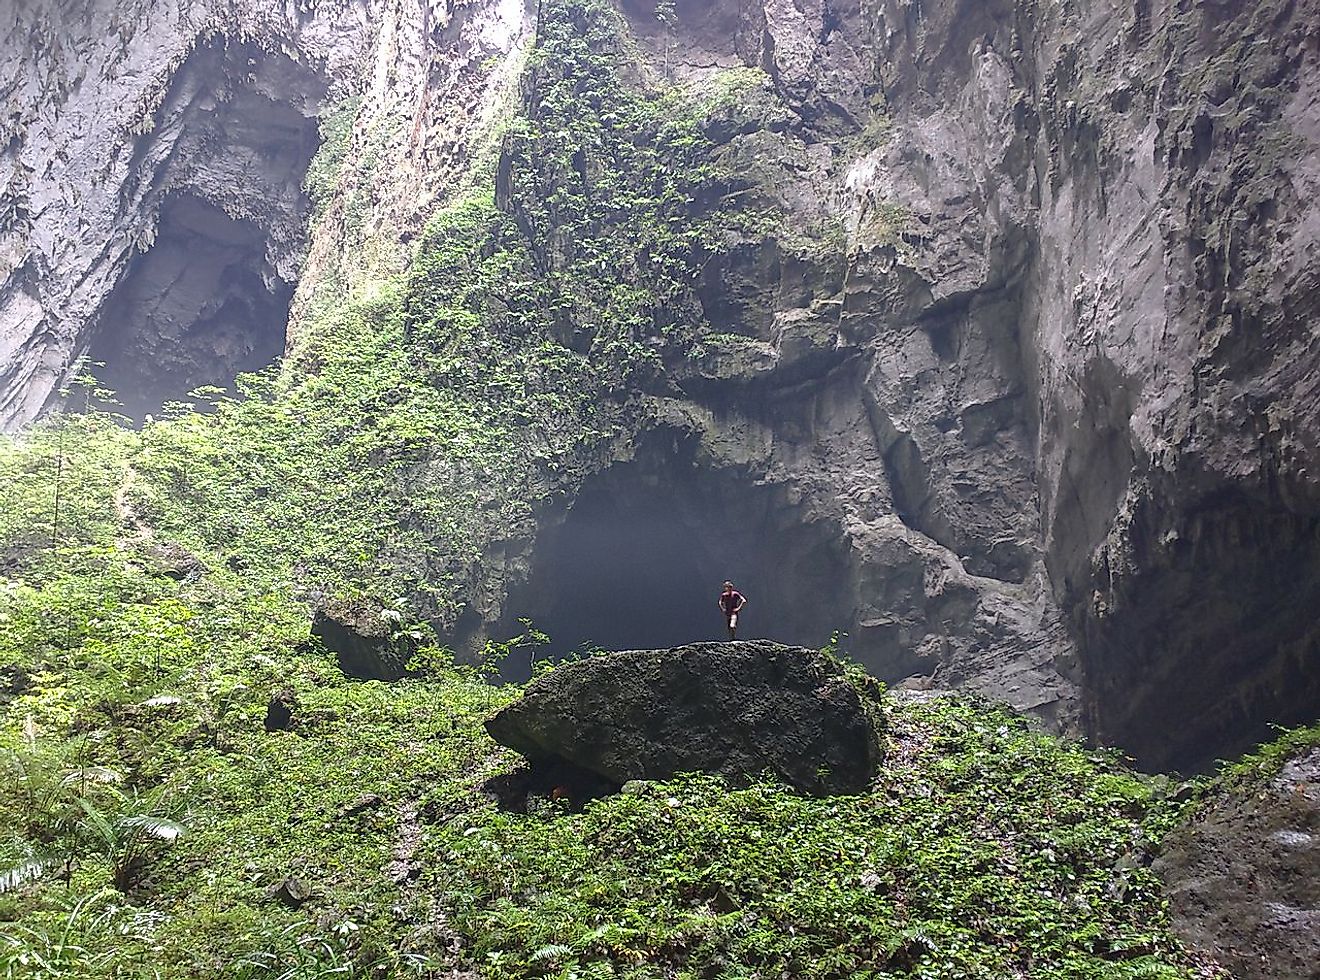 Outside of Han Son Doong Cave in Phong Nha-Ke Bang National Park.